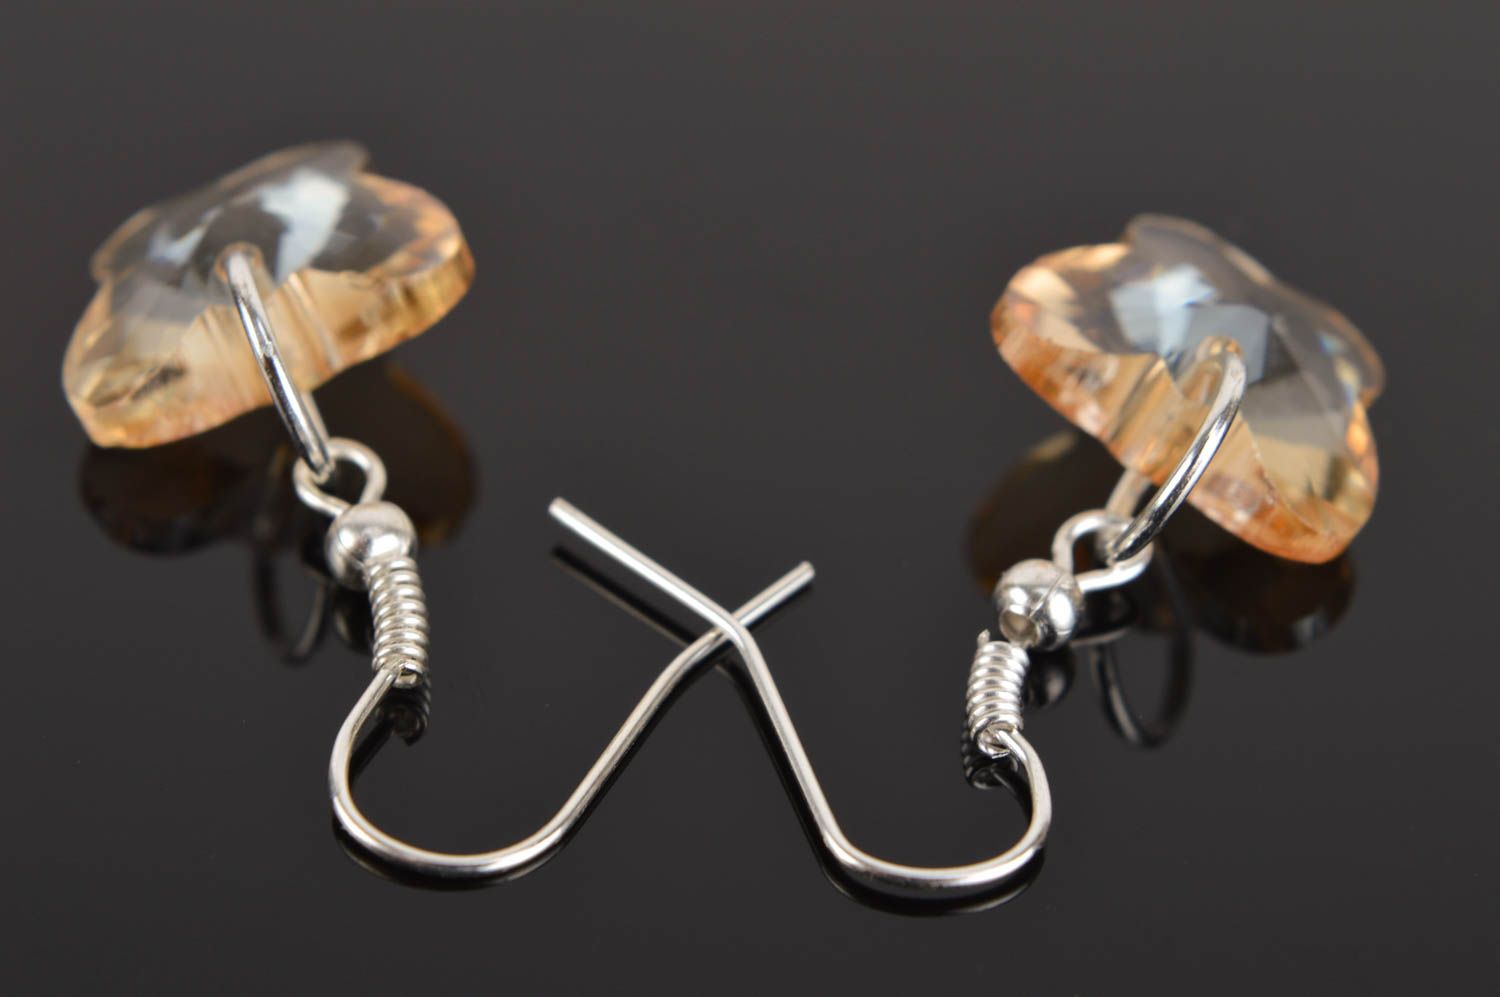 Handmade earrings unusual jewelry designer accessory glass earrings gift ideas photo 2